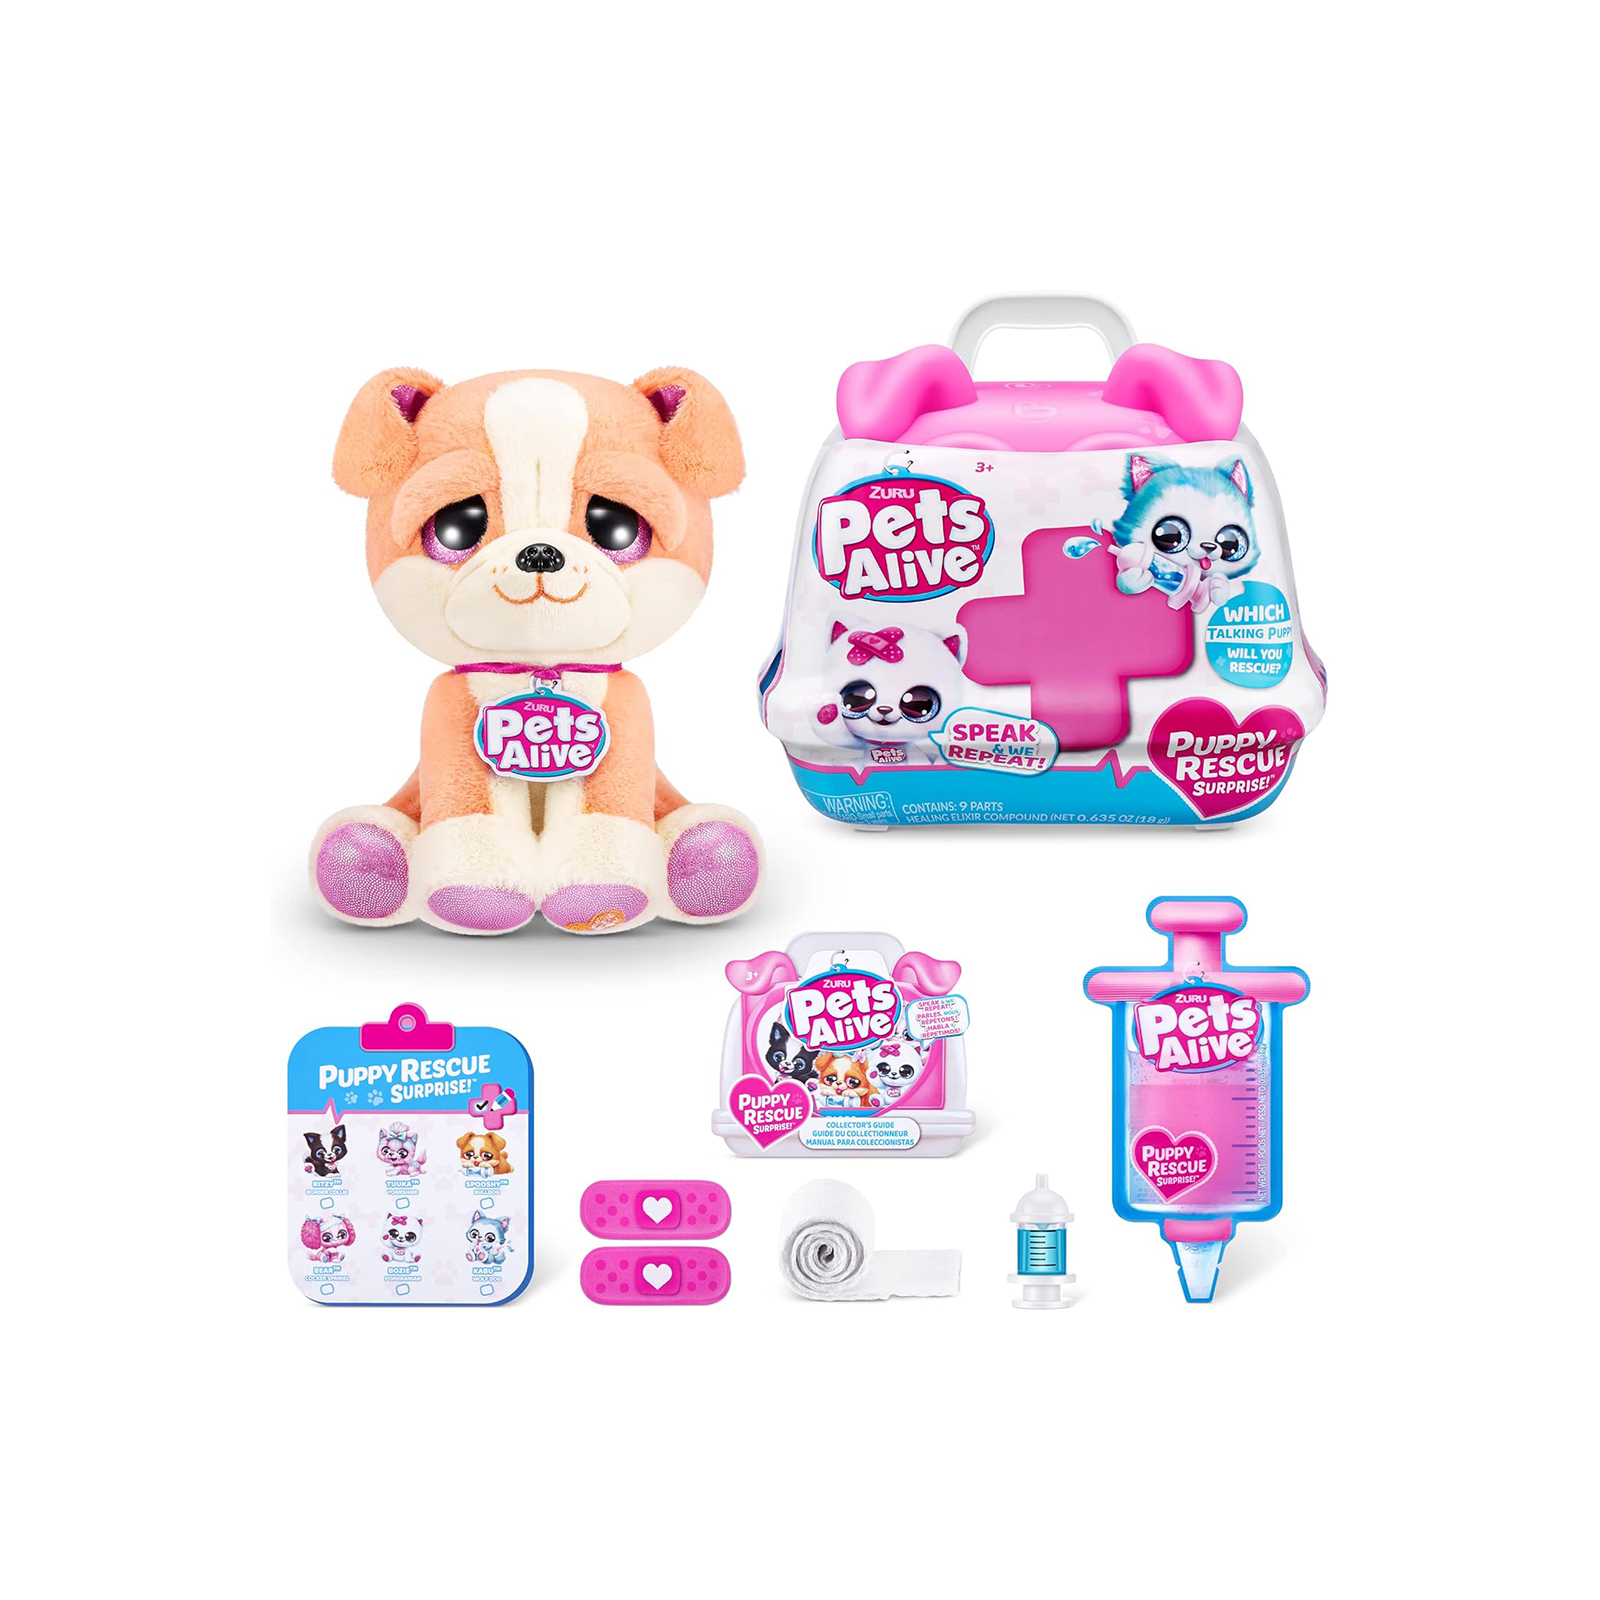 Интерактивная игрушка Pets & Robo Alive набор-сюрприз Pet Shop Surprise S3 Повторюшка-доктор (9540) изображение 3